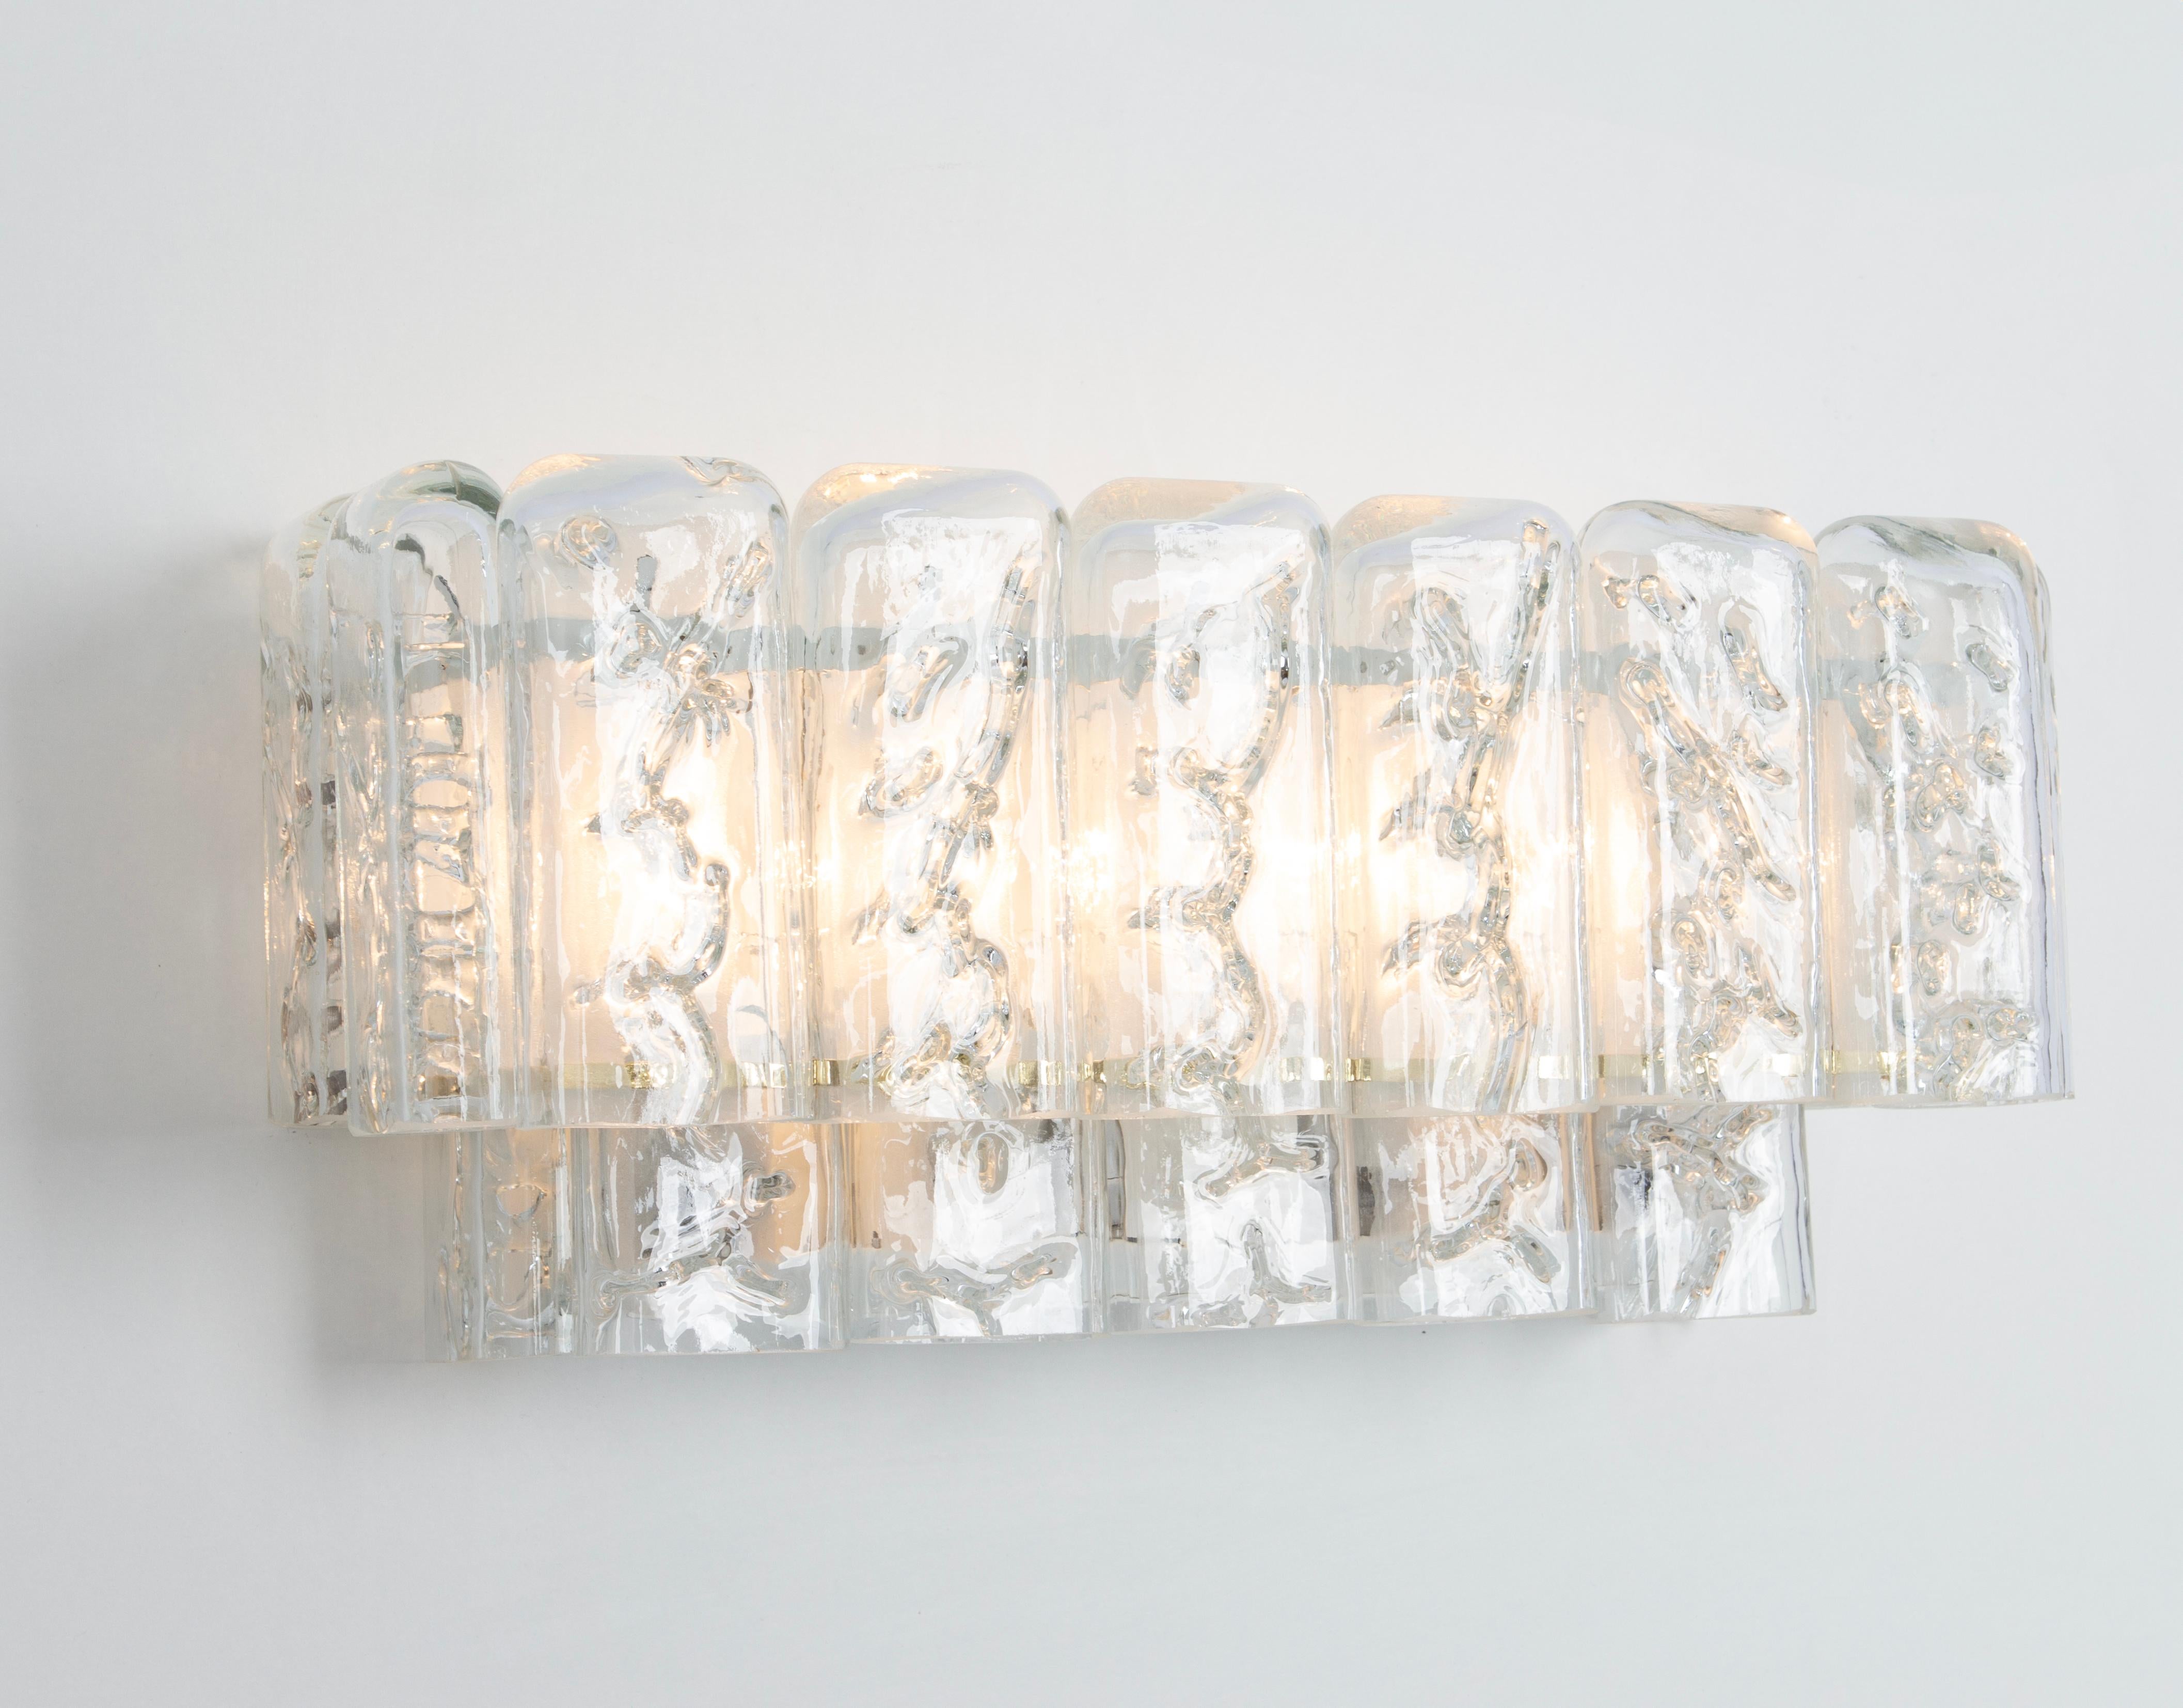 Wunderschönes Paar Wandleuchten aus der Mitte des Jahrhunderts mit Murano-Glasröhren, hergestellt von Doria Leuchten, Deutschland, ca. 1960-1969.

Hochwertig und in sehr gutem Zustand. Gereinigt, gut verkabelt und einsatzbereit. 

Jede Leuchte